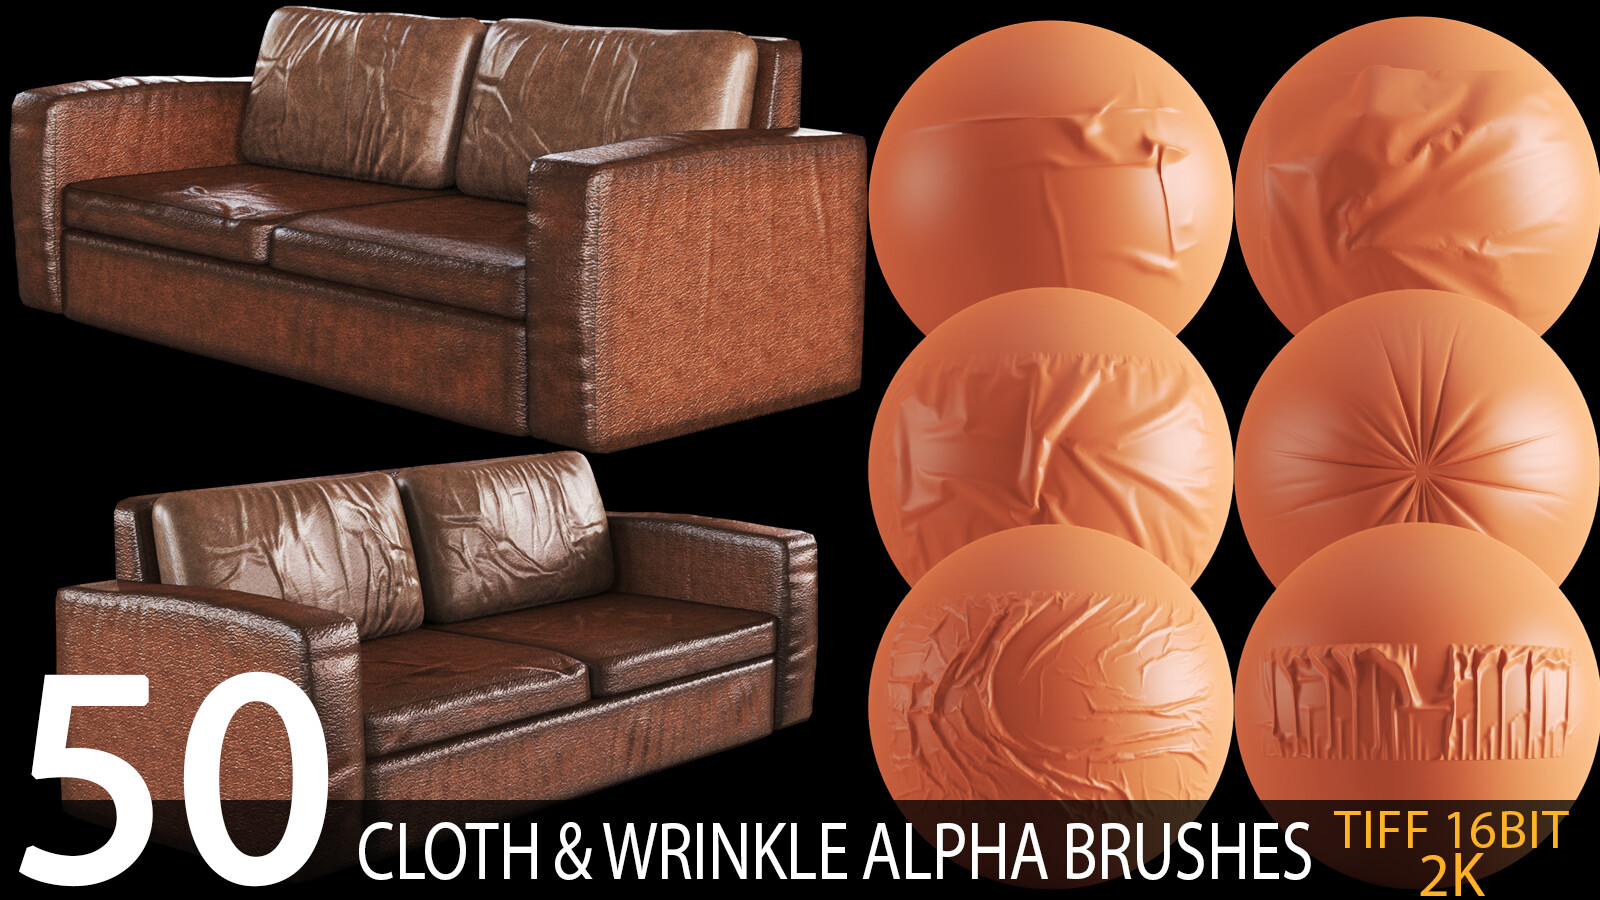 Tyranny Døds kæbe Komprimere ArtStation - 50 cloth and wrinkle alpha brush bundle (sofa and furniture)  2K tiff 16bit | Brushes